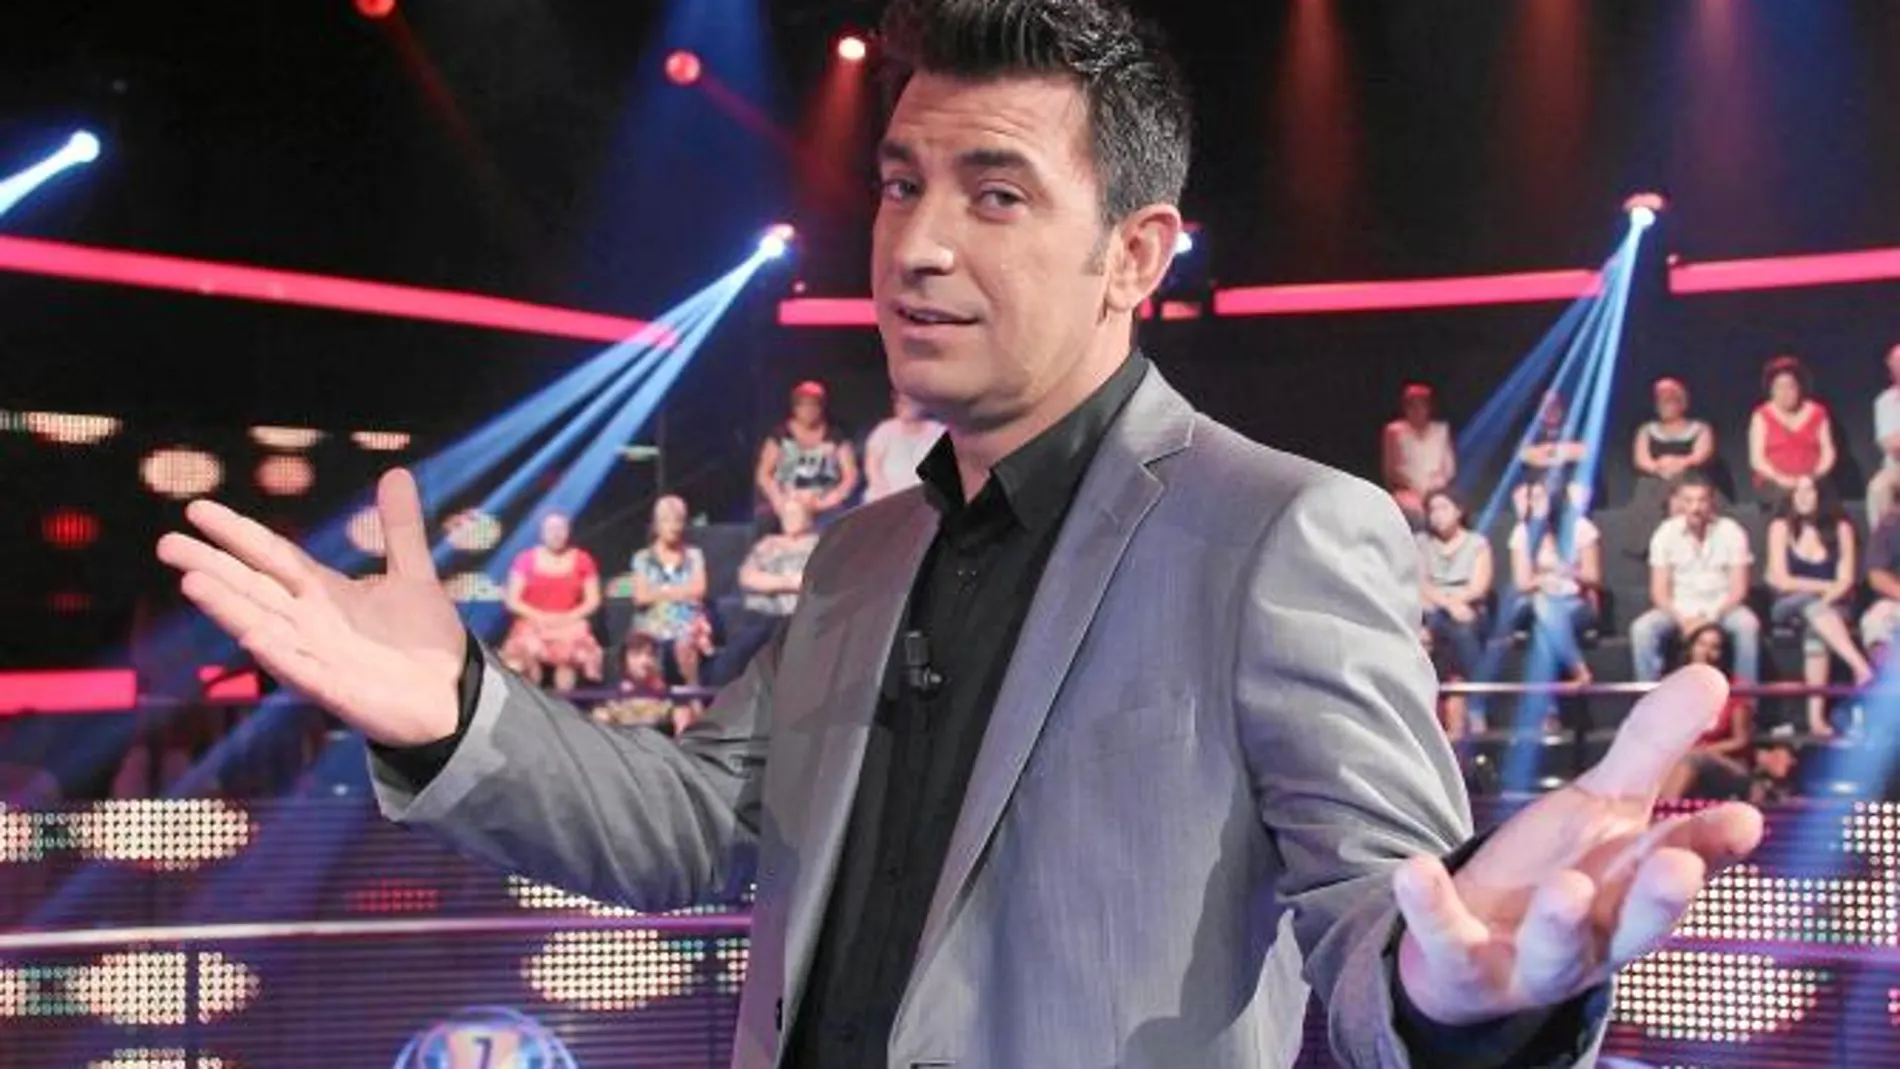 El concurso que conduce Arturo Valls en Antena 3 ha sido un éxito en la franja horaria del «prime time»